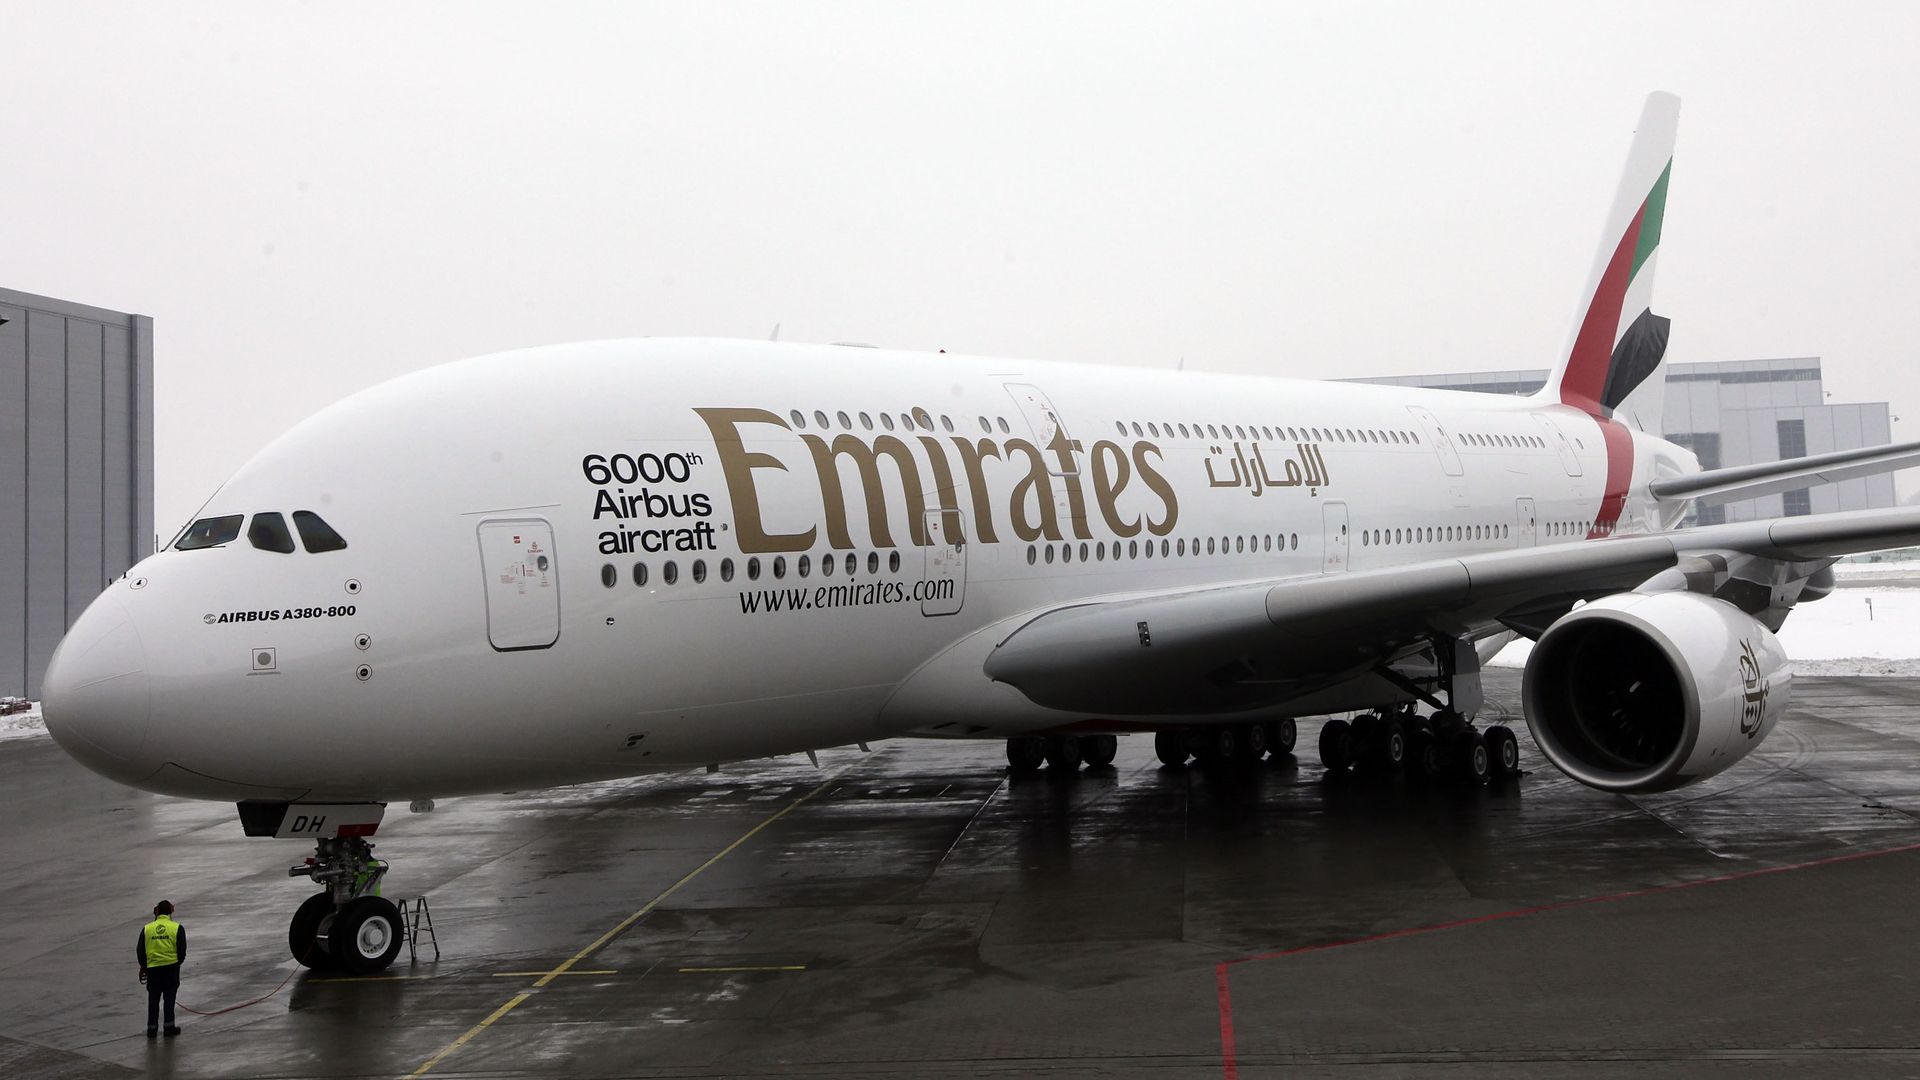 Emirates airbus